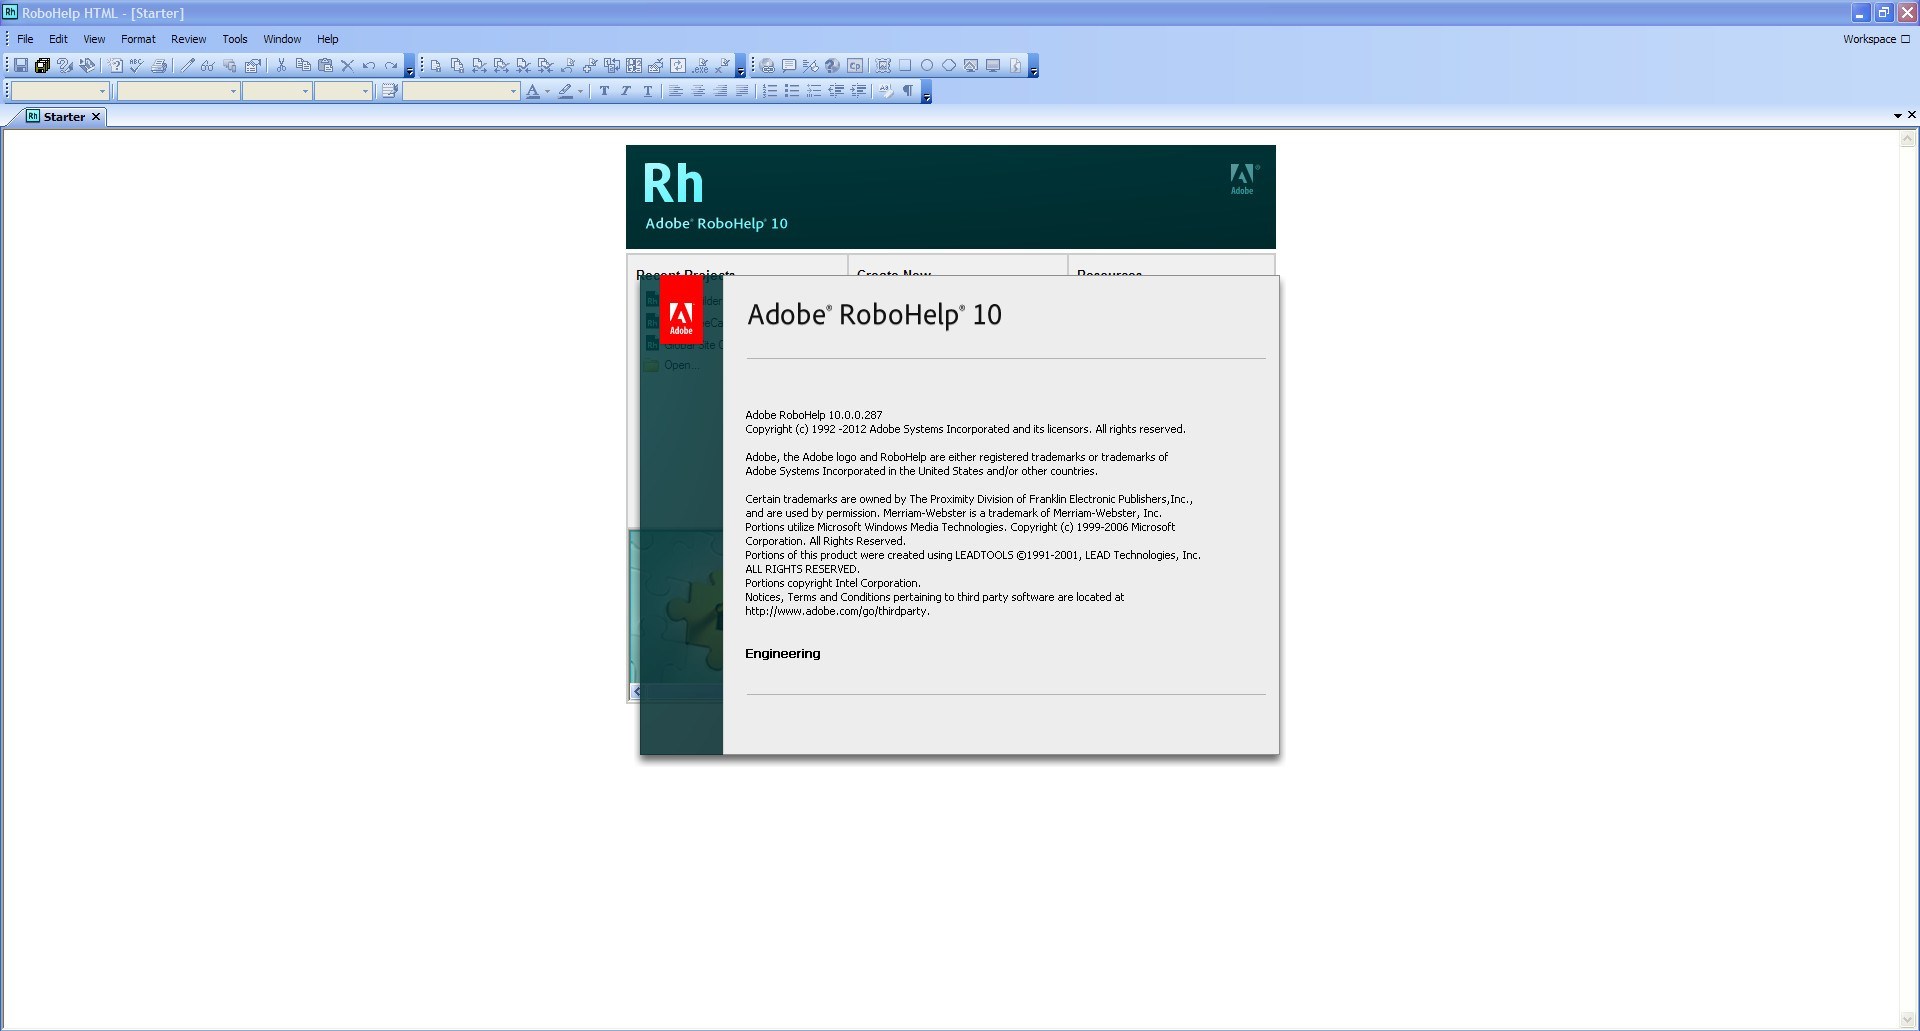 Adobe RoboHelp 2022.3.93 free download